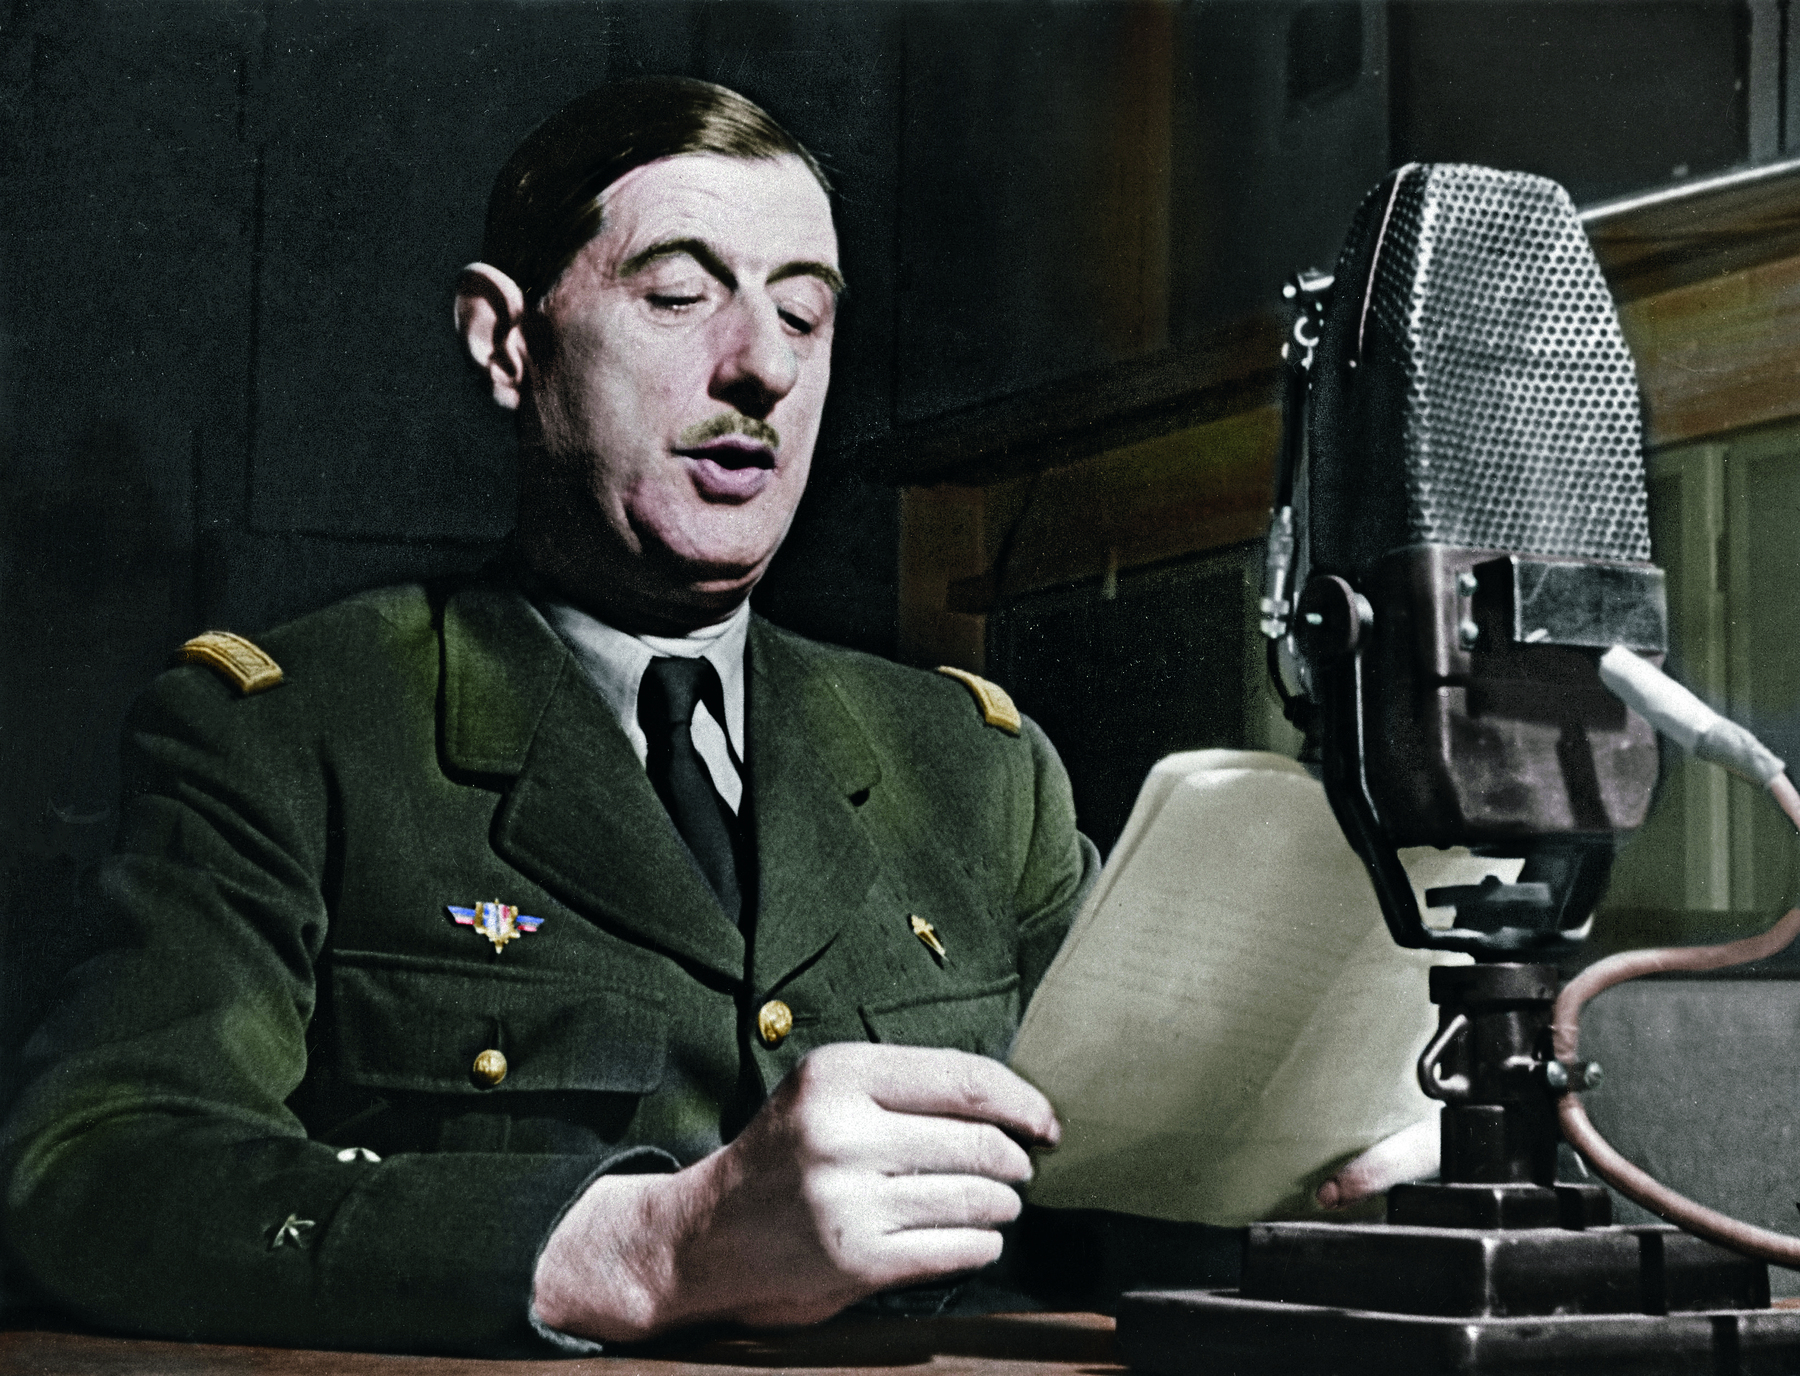 Fotografia. Um homem de cabelos castanhos, curtos e lisos, vestindo uma farda verde escuro, à frente de uma mesa contendo um microfone. Segura folhas de papel em suas mãos, voltadas para seu rosto.